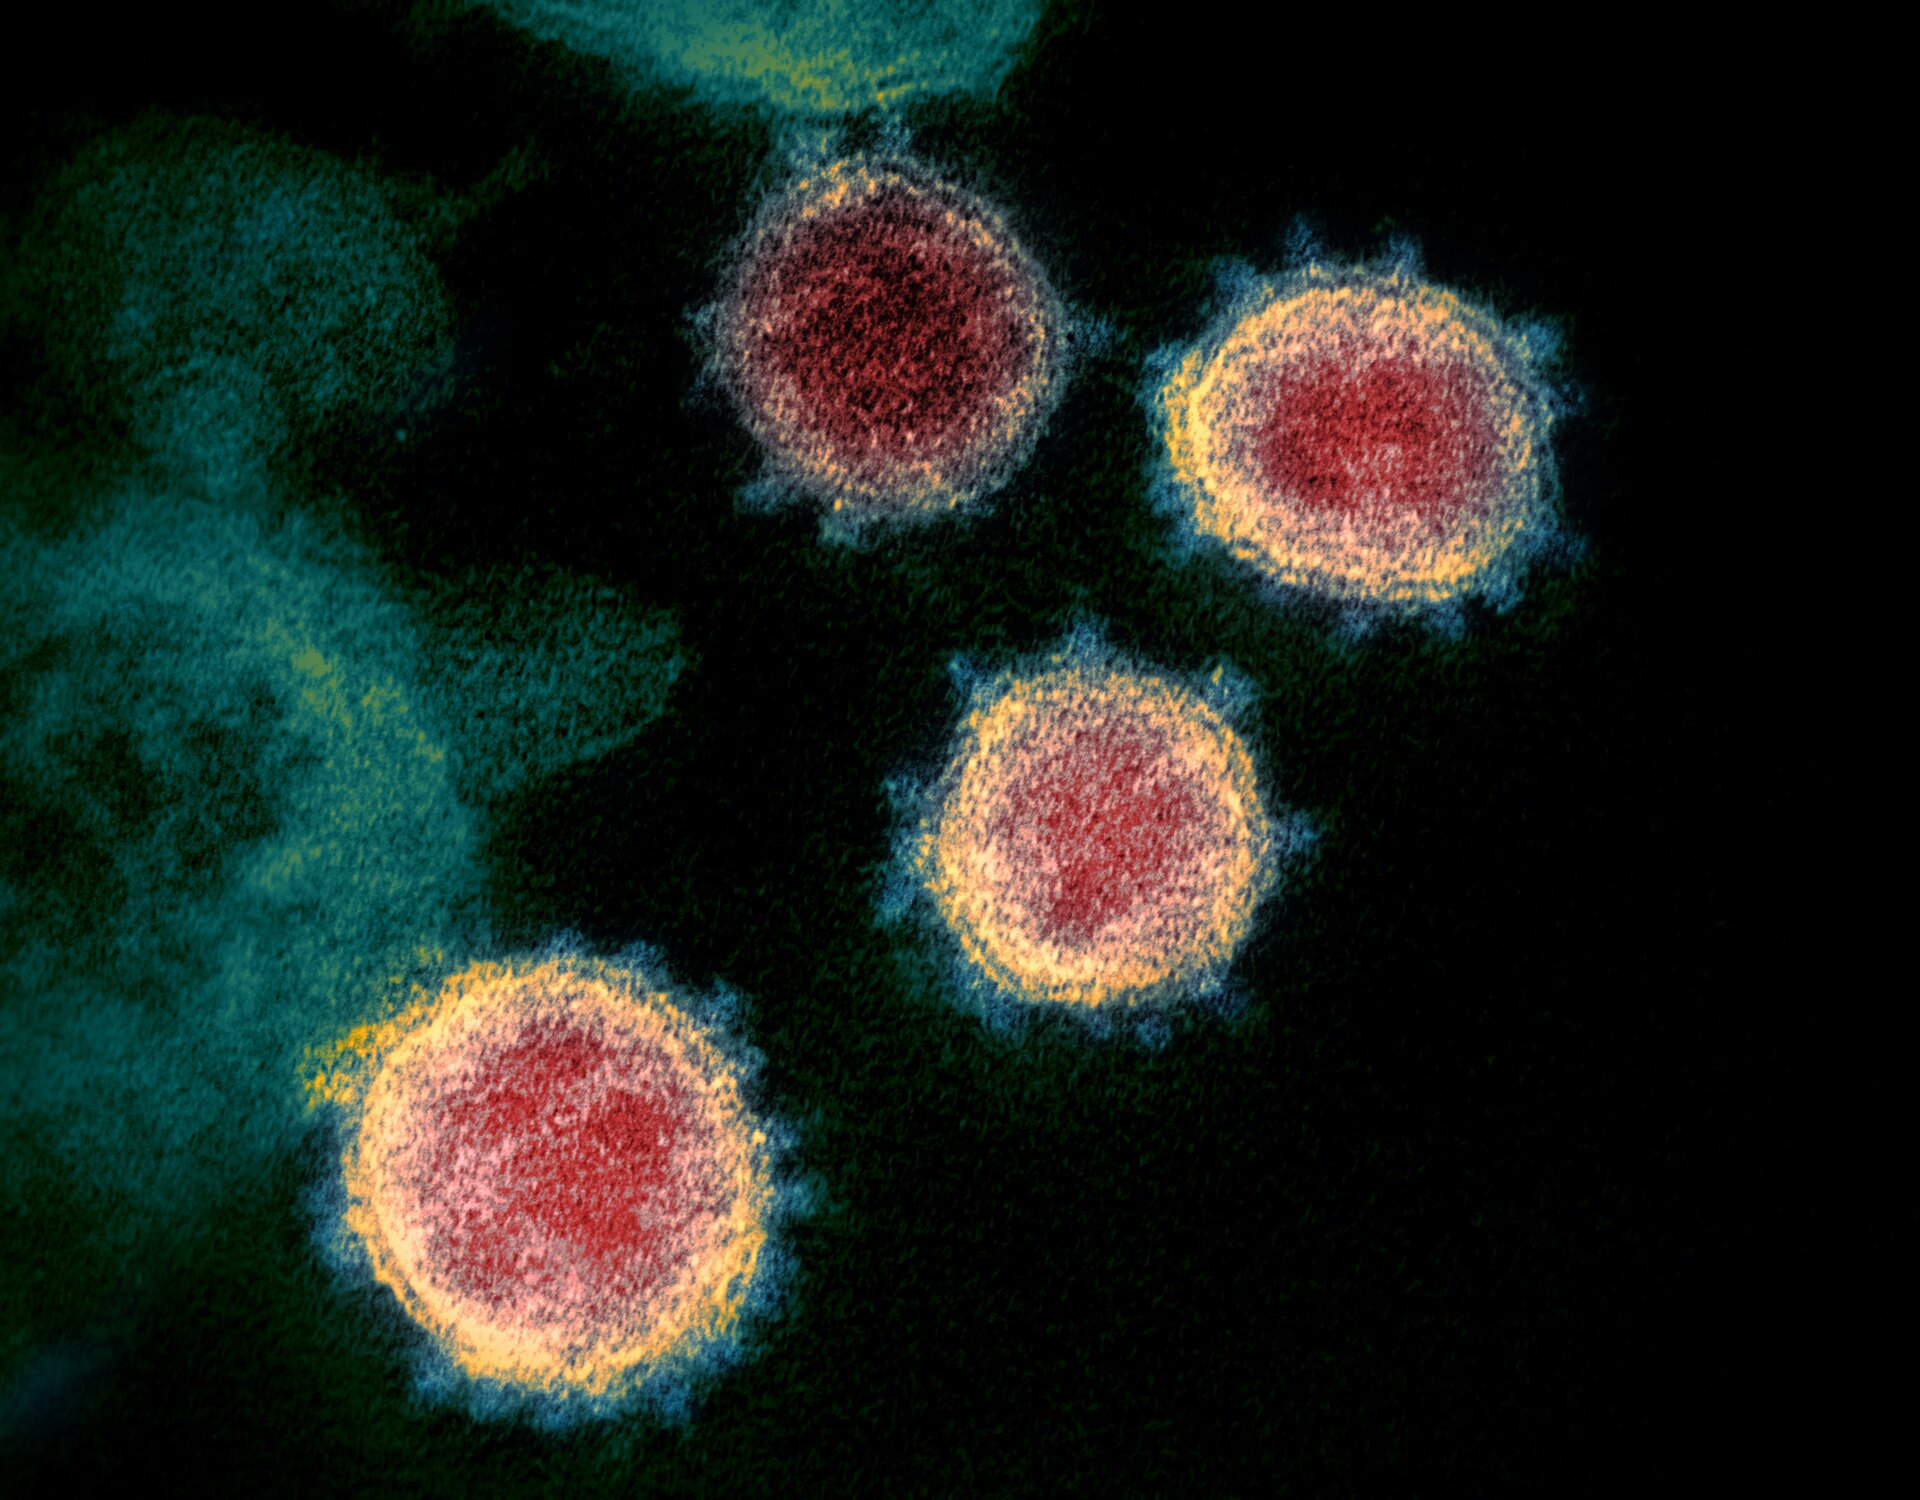 Na zdjęciu mikroskopowym widoczne okrągłe koronawirusy. Wewnątrz czerwone, na zewnątrz z żółtą obwódką i niebieskimi kolcami. Tło zdjęcia jest czarne.